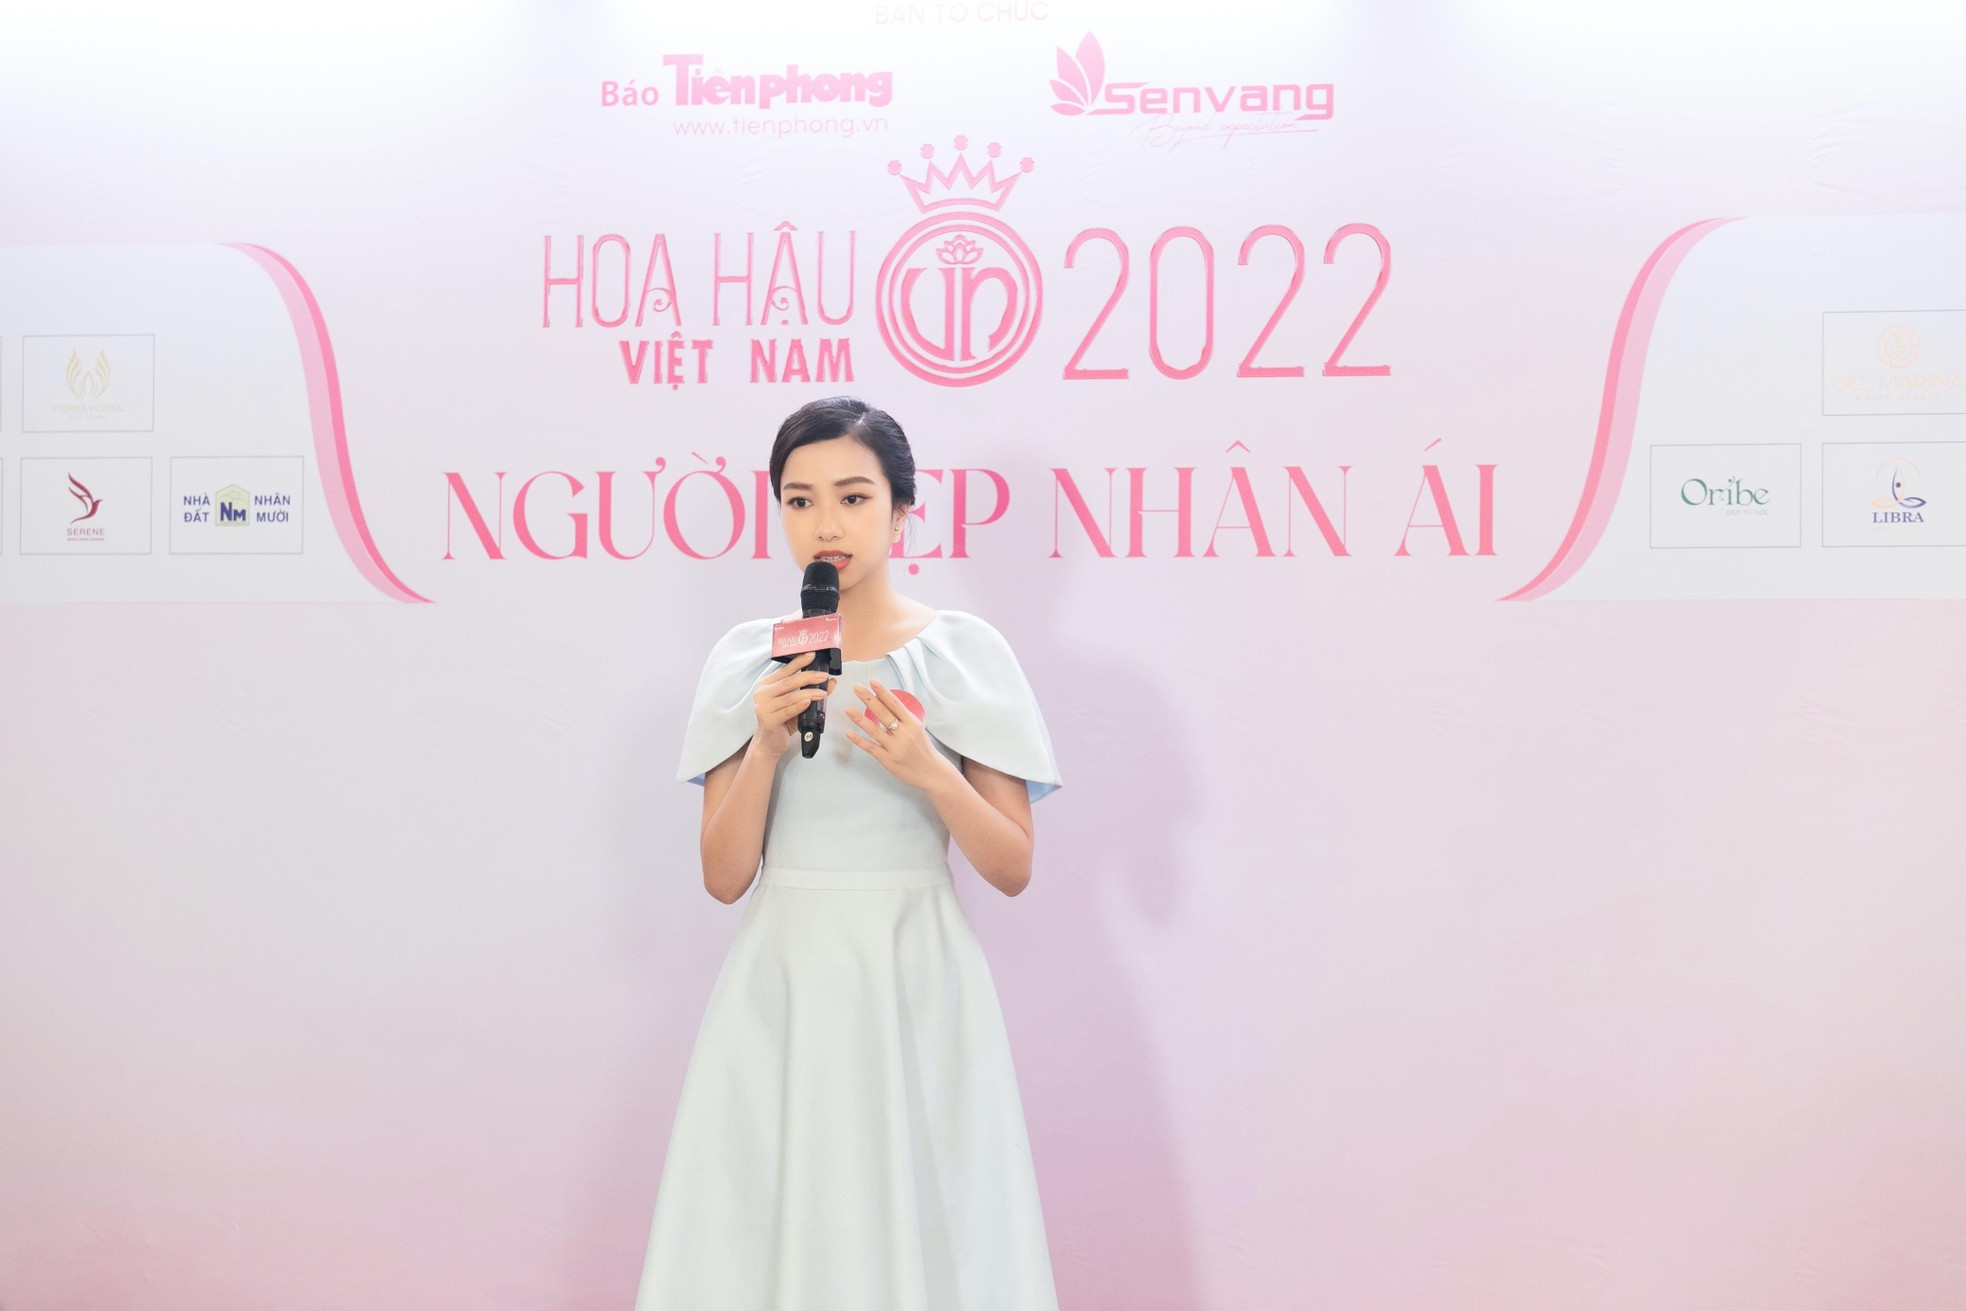 Thí sinh Hoa hậu Việt Nam thuyết trình dự án Nhân ái bằng tiếng Anh - Ảnh 1.